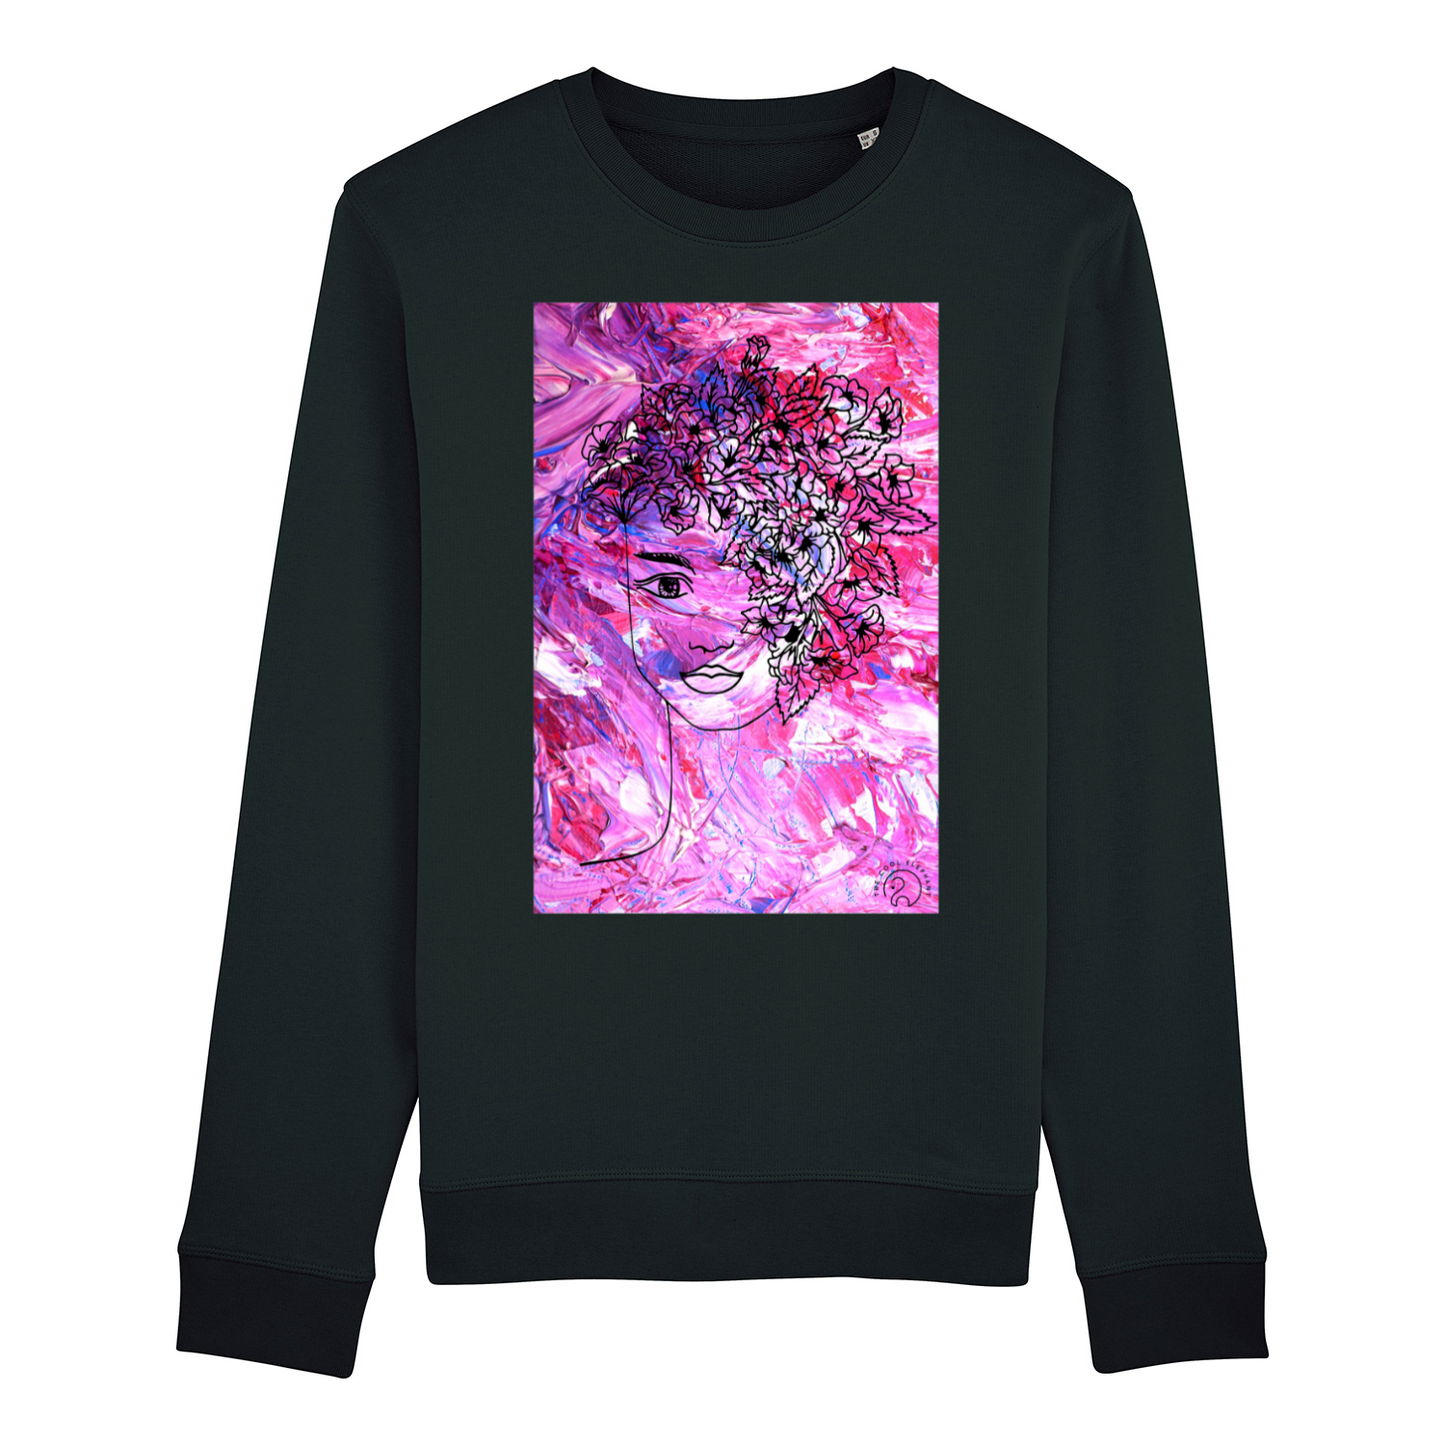 Sweatshirt "Flower Girl"